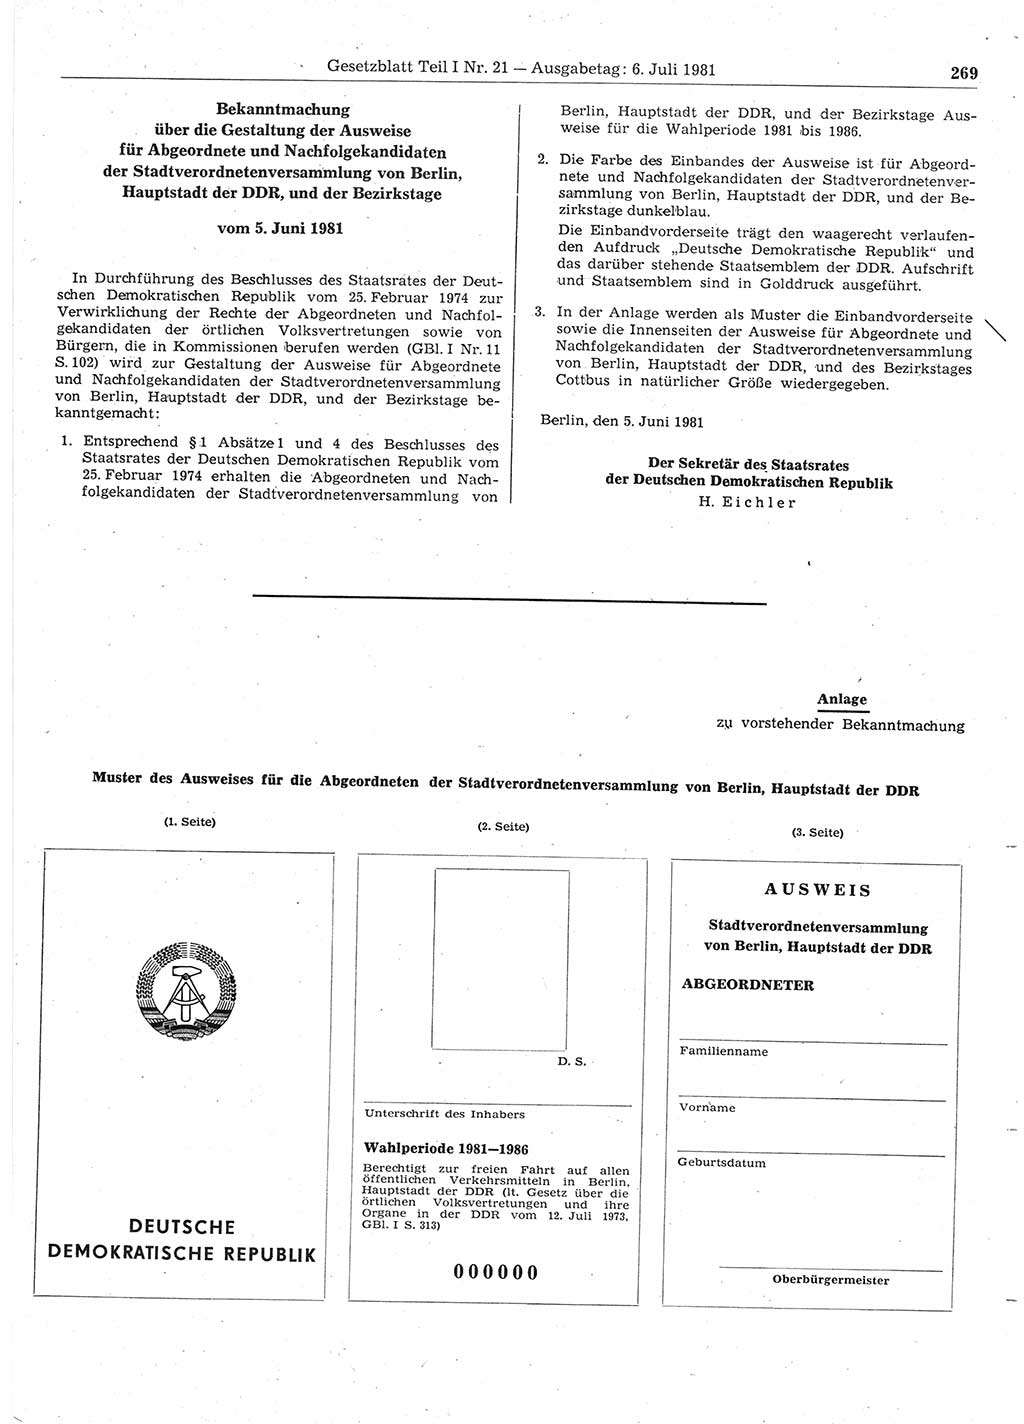 Gesetzblatt (GBl.) der Deutschen Demokratischen Republik (DDR) Teil Ⅰ 1981, Seite 269 (GBl. DDR Ⅰ 1981, S. 269)